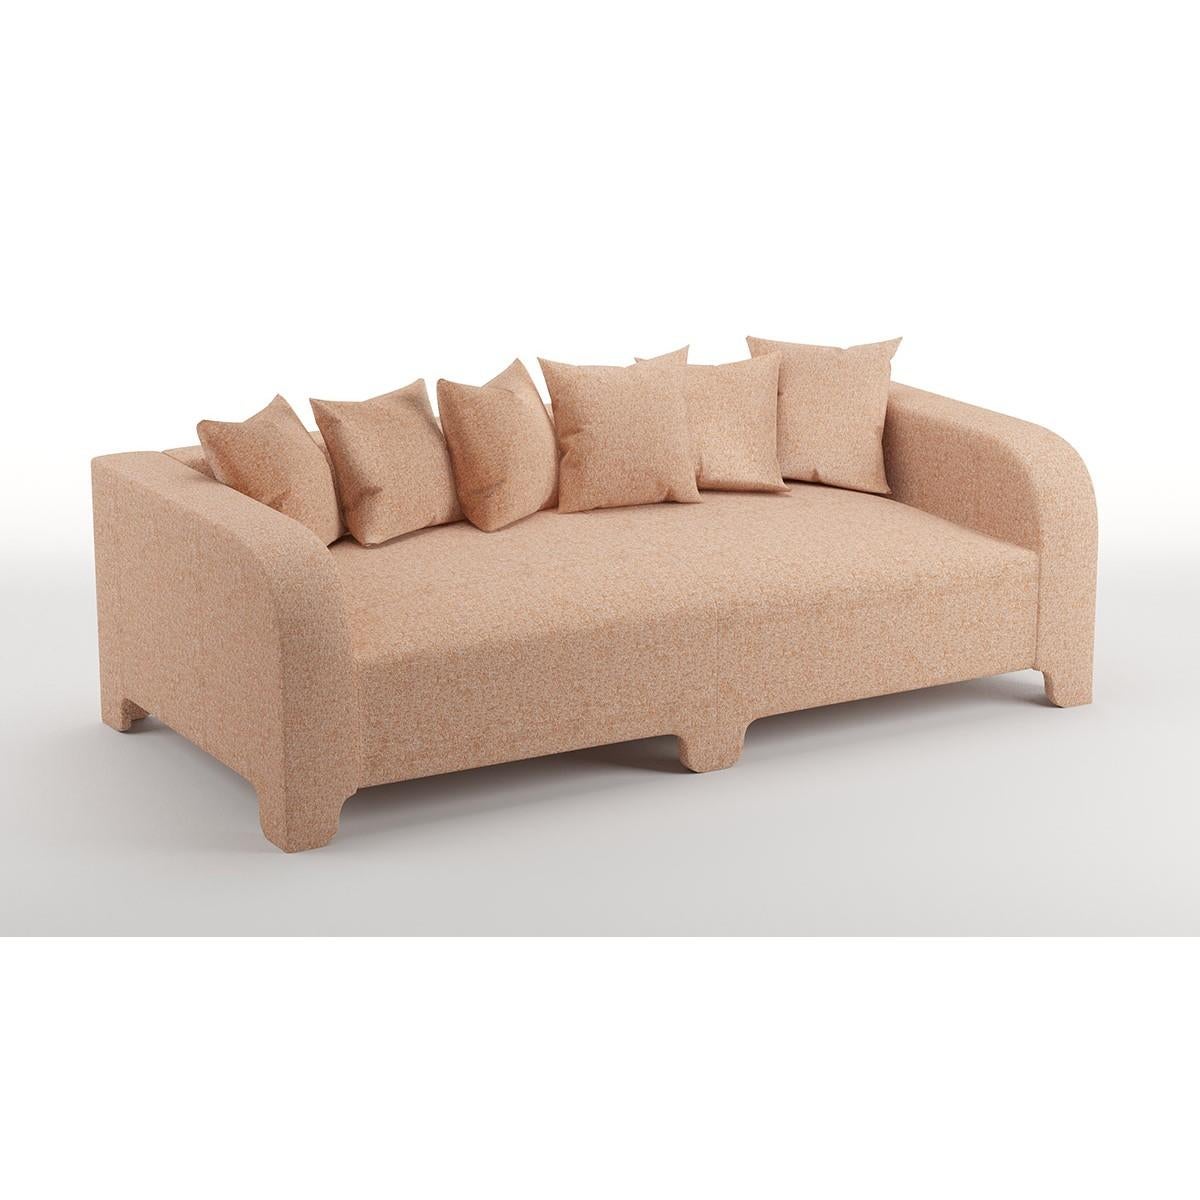 Popus Editions Graziella 3 Seater Sofa in Terracotta London Linen Fabric For Sale